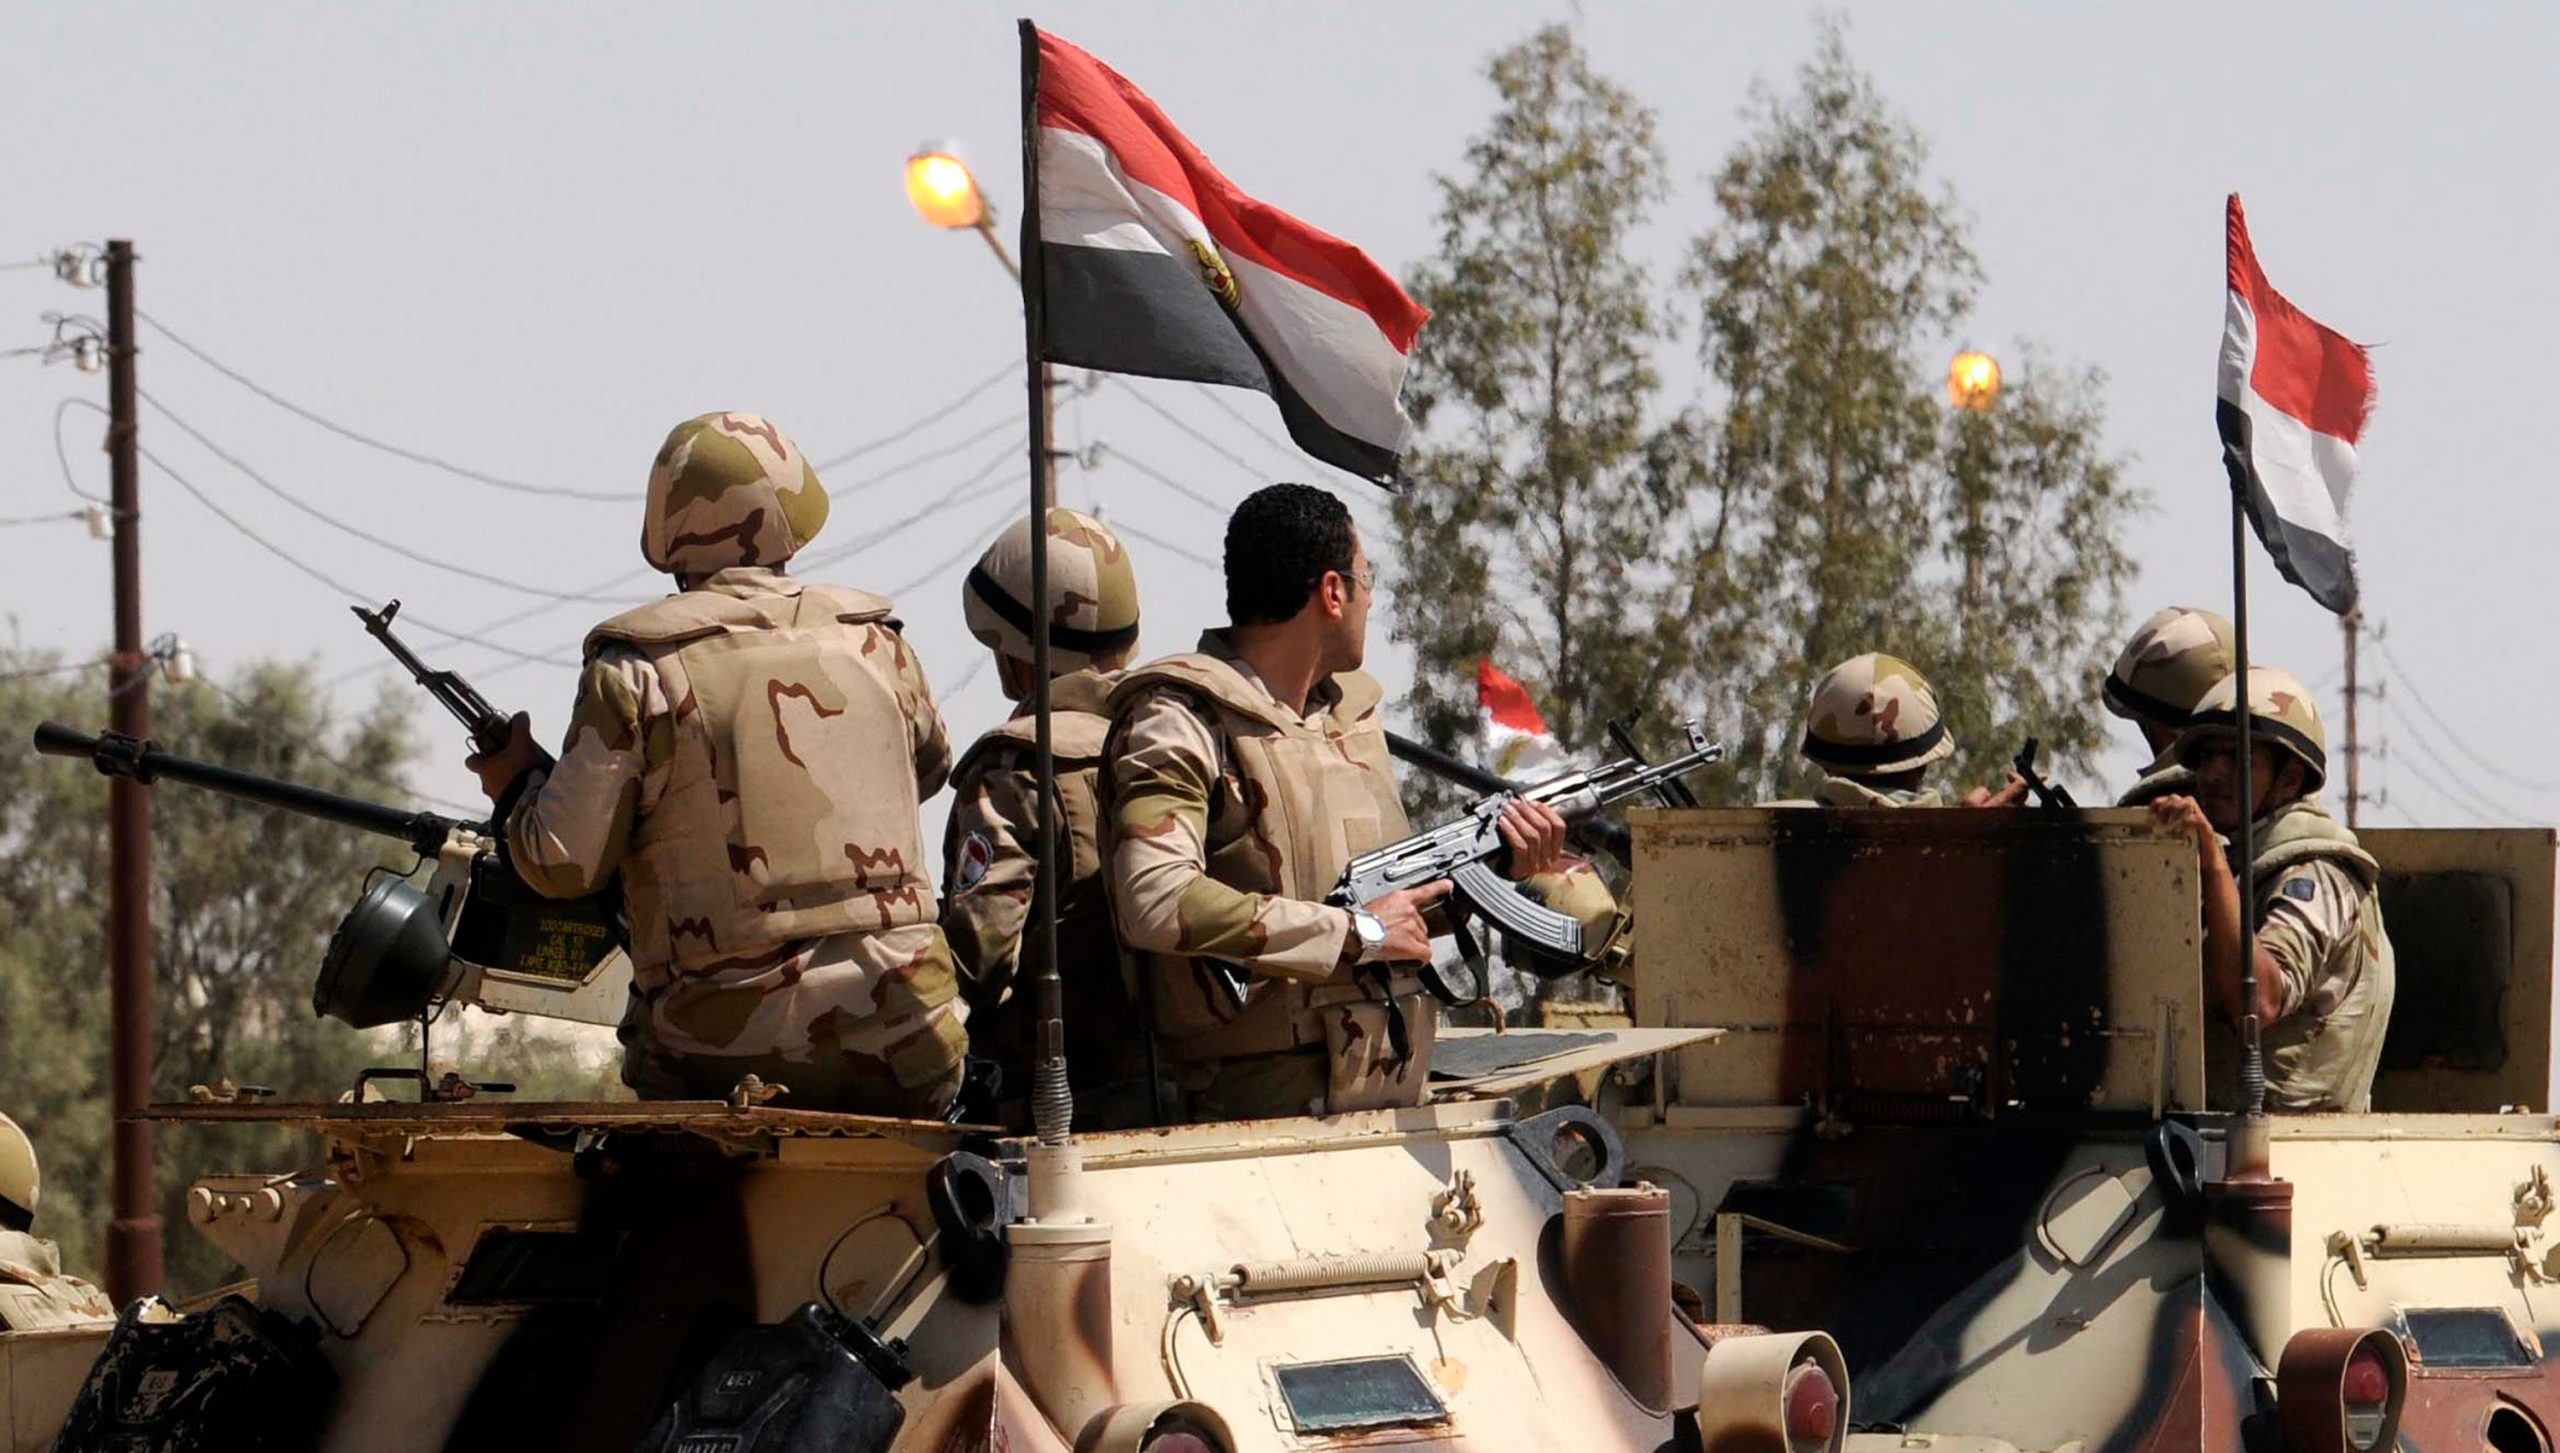 عاجل| القوات المسلحة تصدر بياناً منذ قليل بتفاصيل إحباط عملية إرهابية في سيناء ومقتل 18 تكفيري وأعداد الشهداء والمصابين